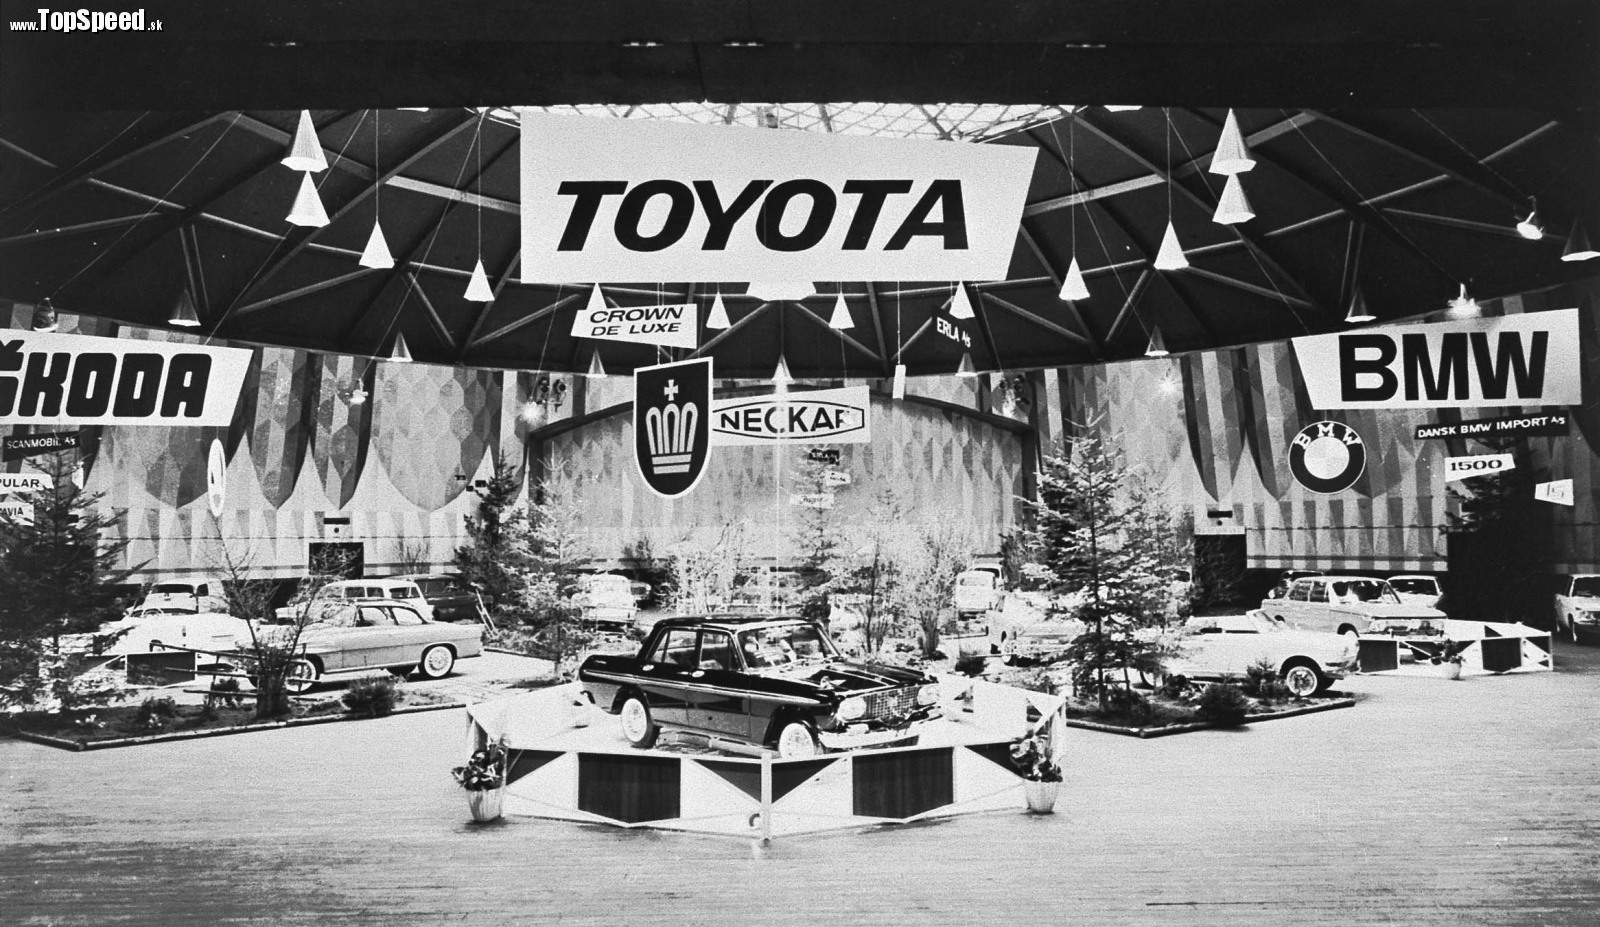 Dánsky autosalón v roku 1963 znamenal začiatok exportu modelu Toyota Crown do tejto krajiny. Mimochodom, táto fotka hovorí čosi aj o milovníkom značky Škoda, ktorá je tam tiež.